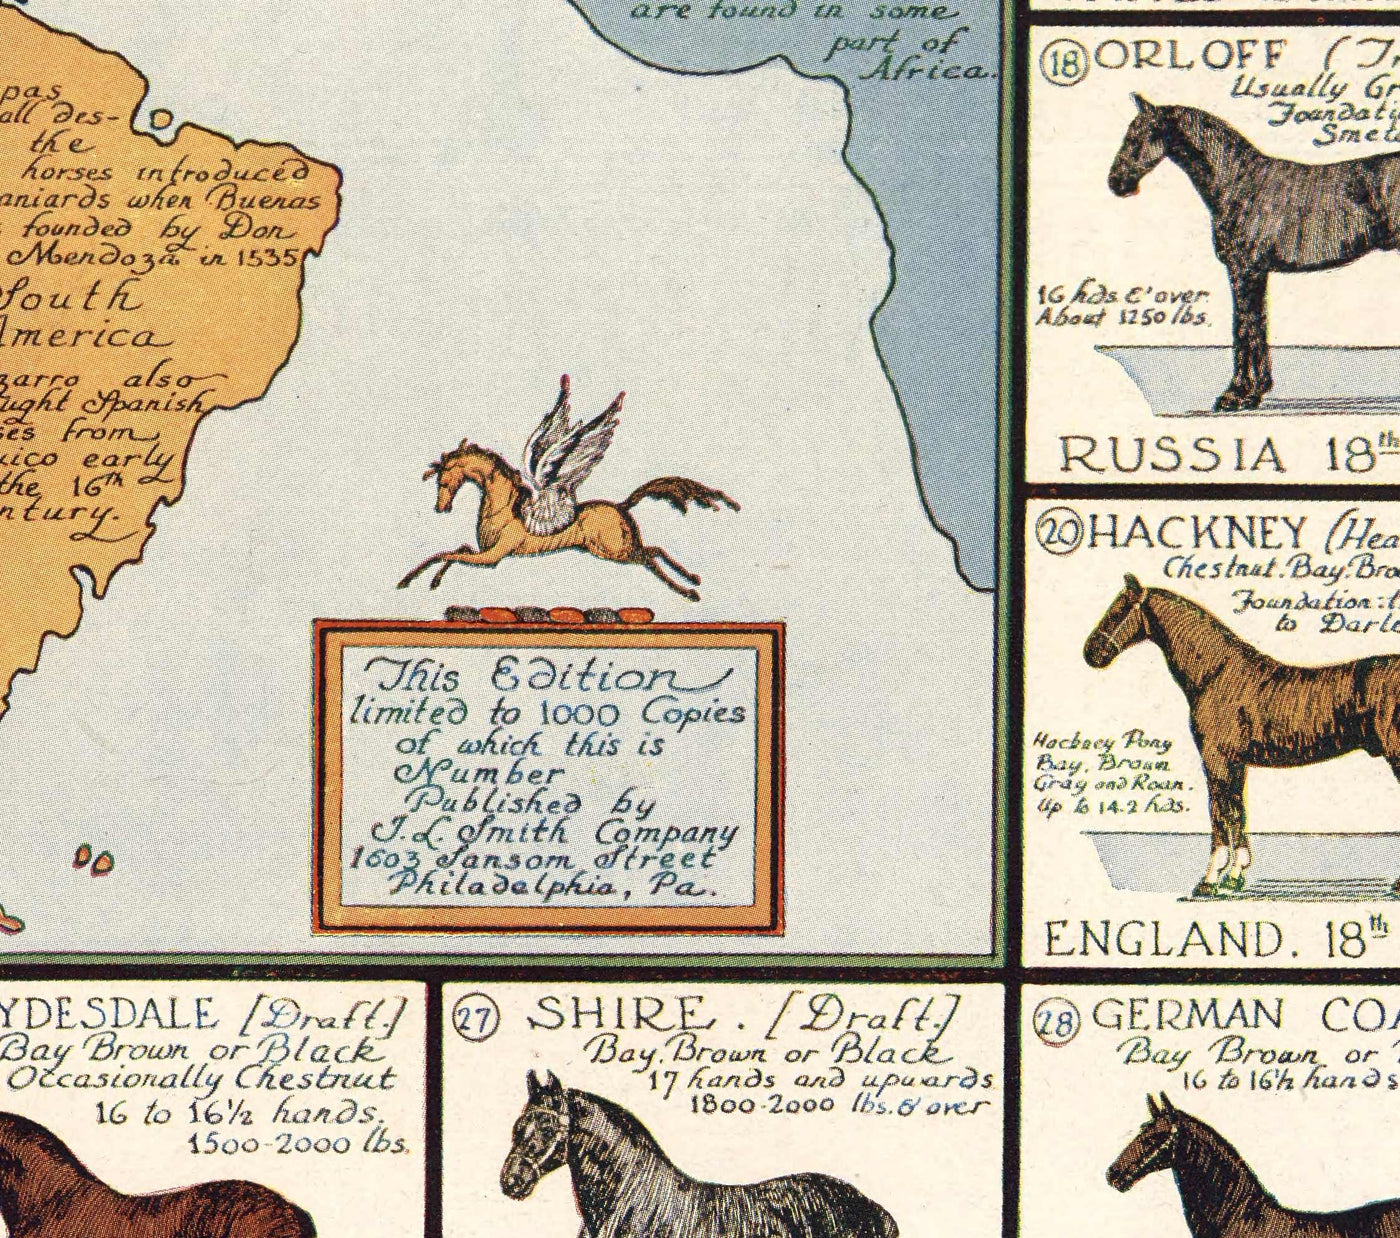 Vieille carte des chevaux, 1936 - Vieille carte de l'Atlas mondial avec les origines des races - Pur-sang, Mustang, Shire, Poney de Polo, Arabe